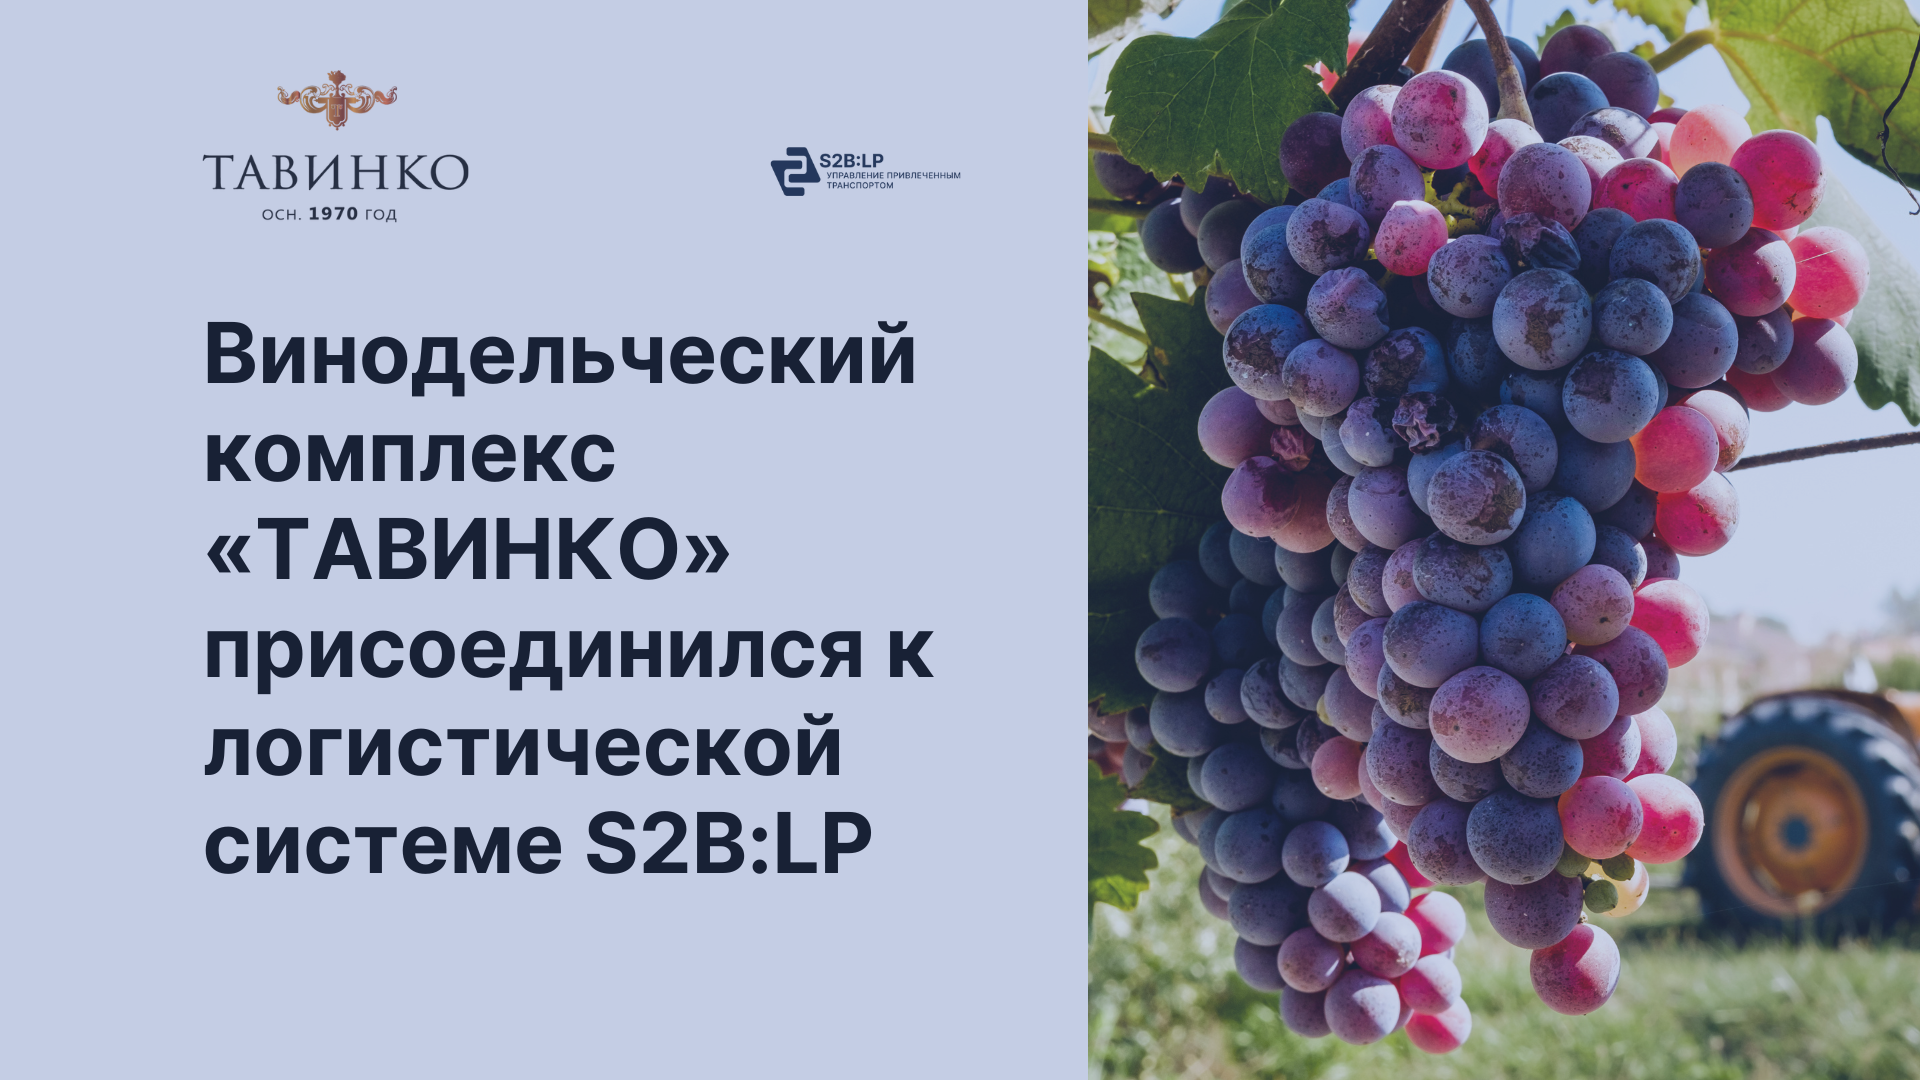 Винодельческий комплекс «ТАВИНКО» присоединился к логистической системе S2B:LP